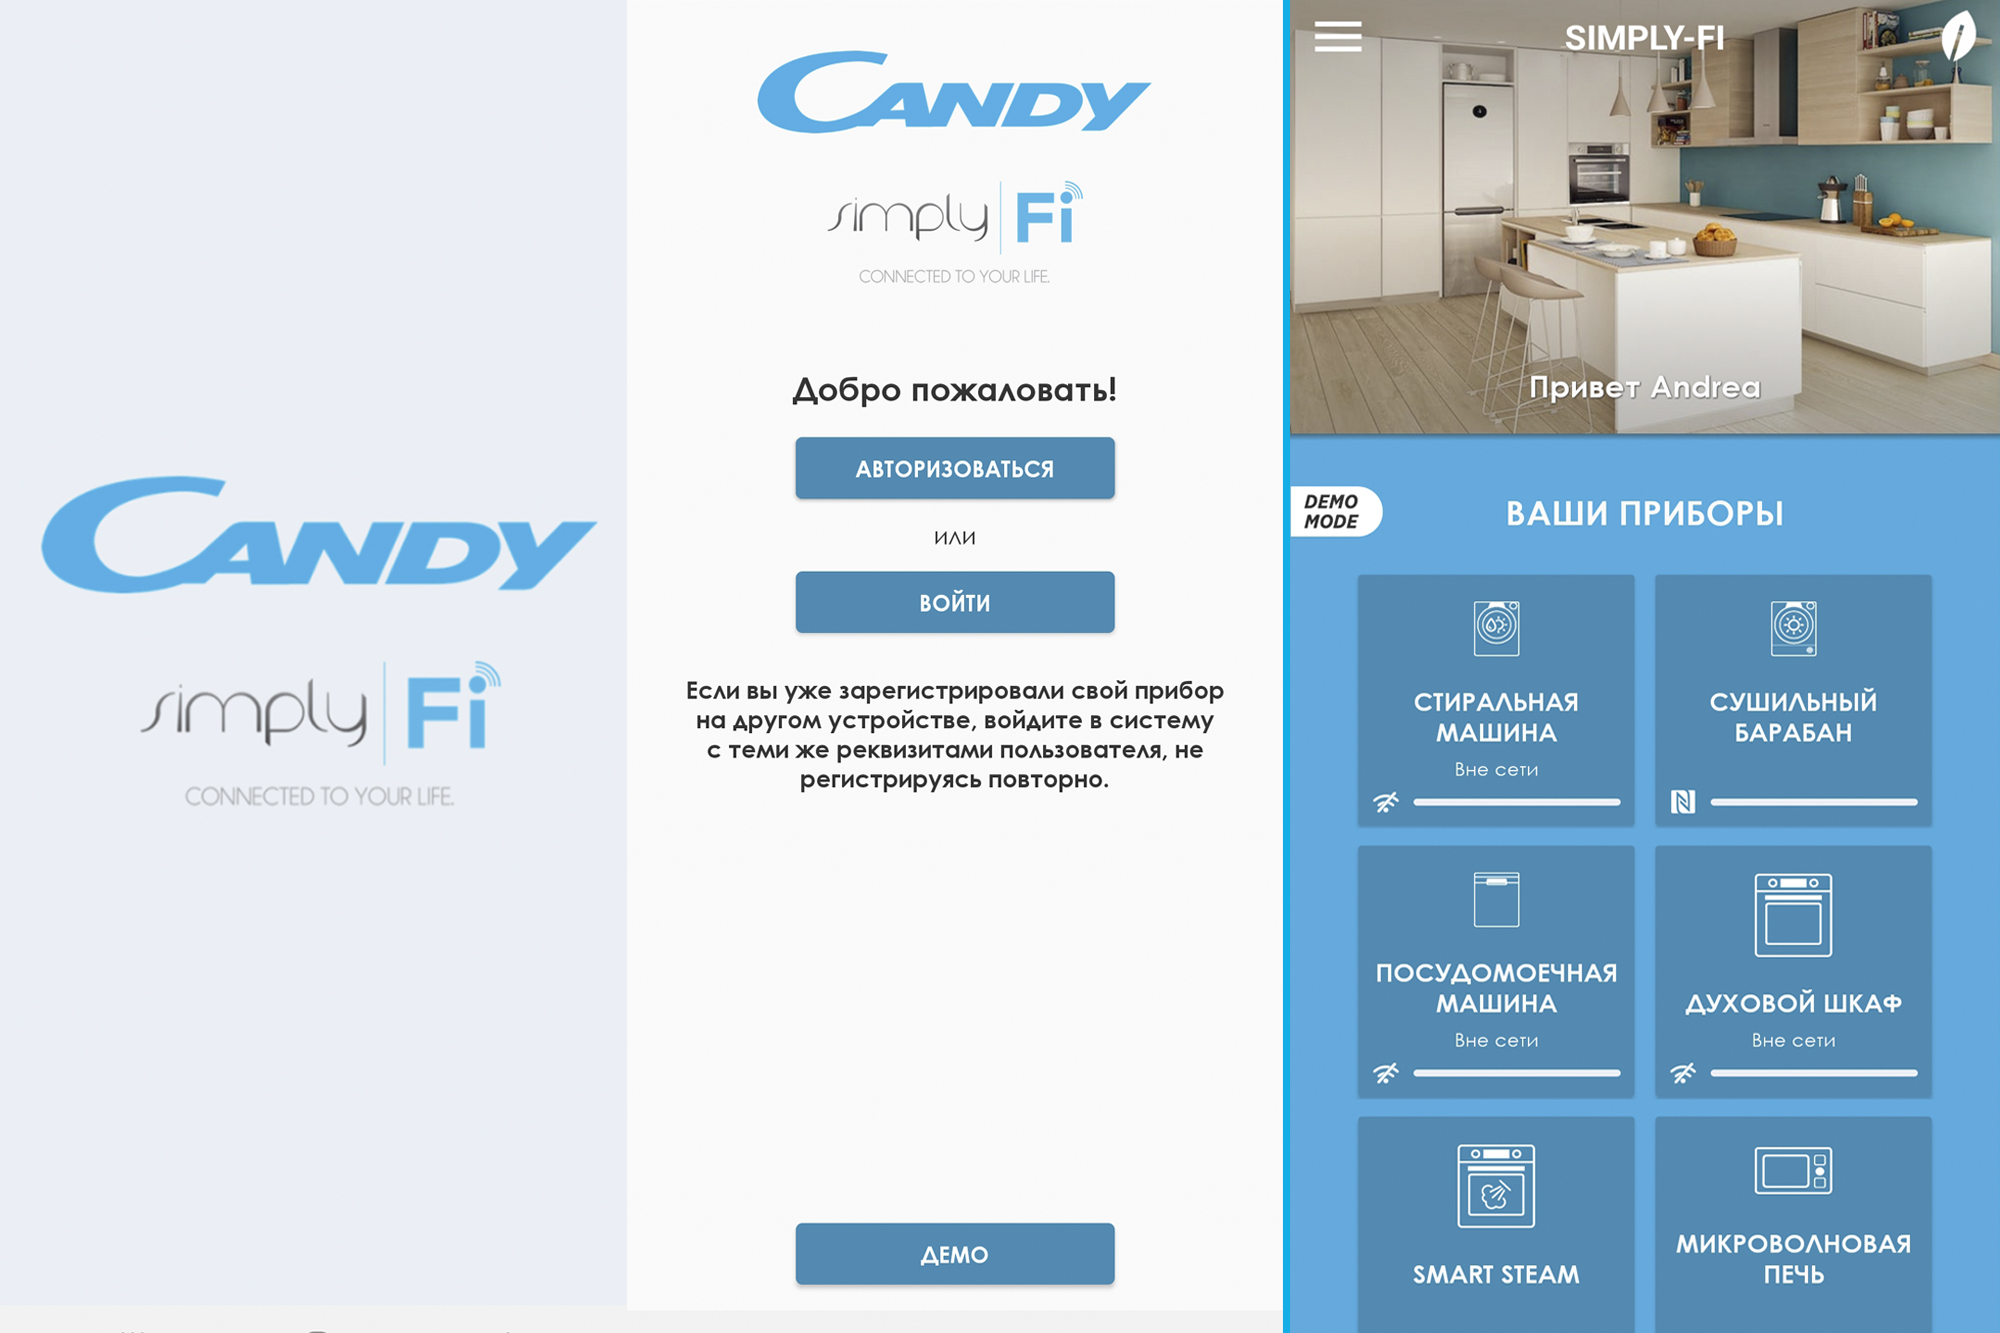 Simply приложение. Candy simply-Fi. Fcne828x WIFI. Candy регистрации в приложении. Candy simply-Fi регистрация.